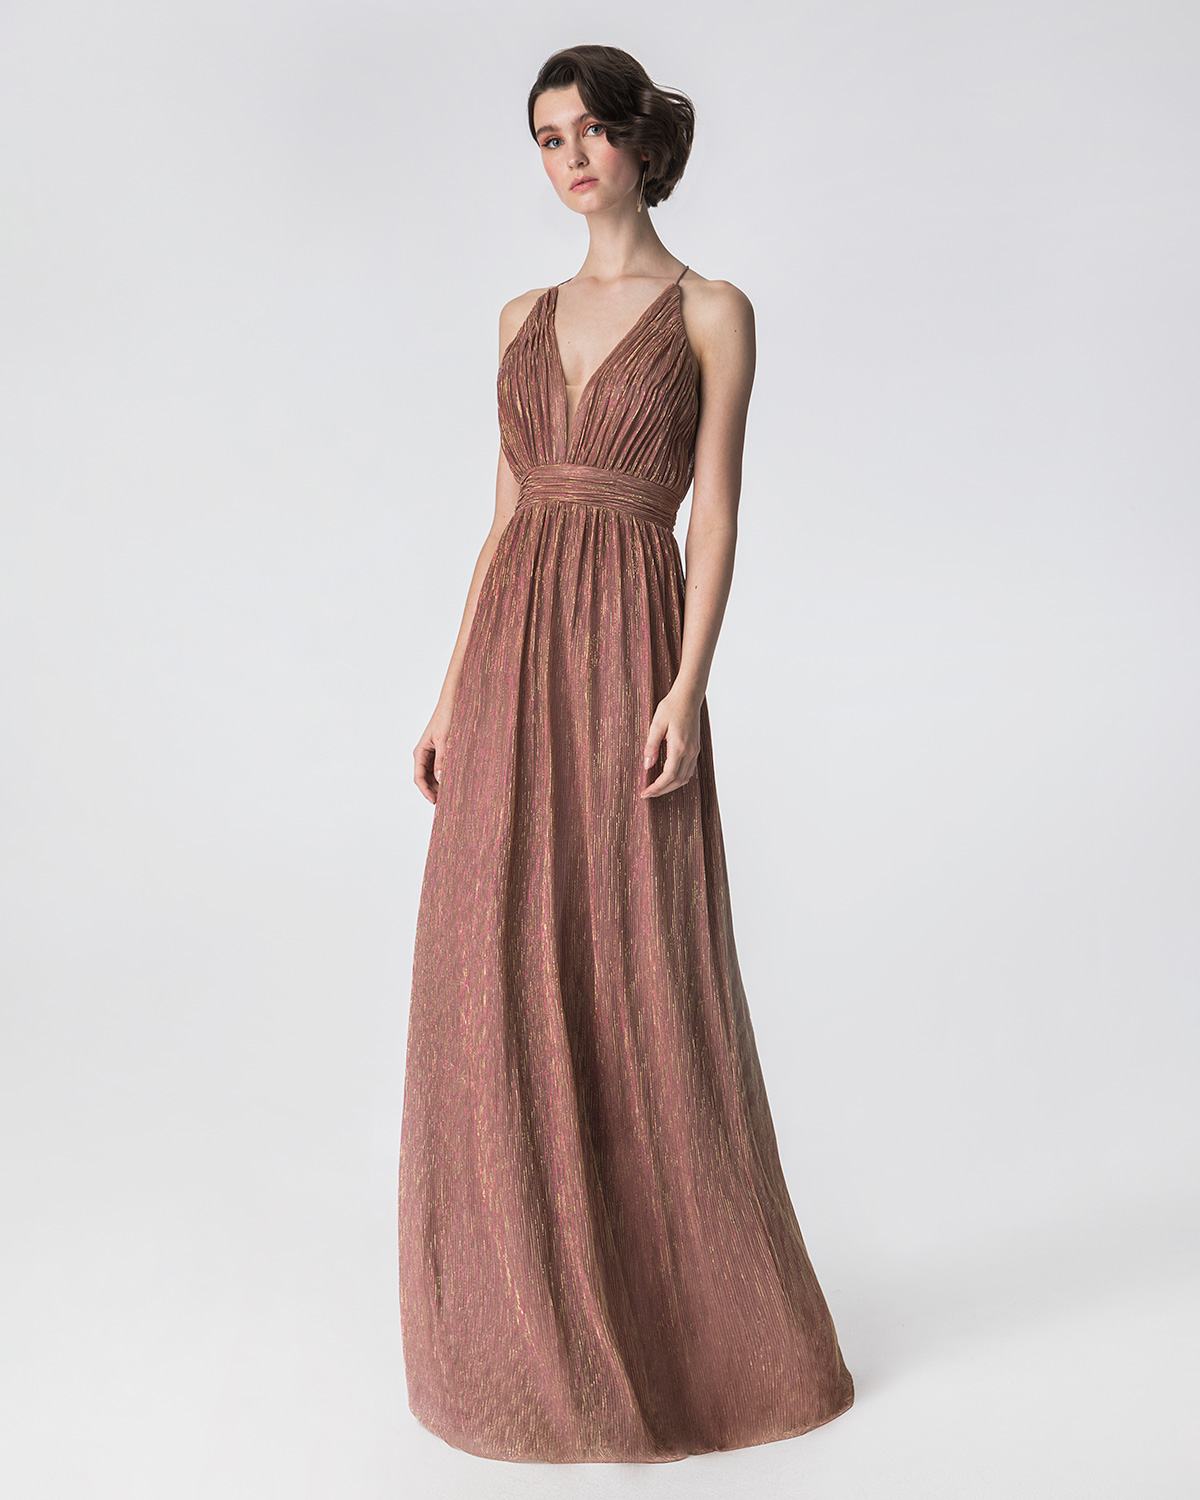 Κοκτέιλ Φορέματα / Μακρύ φόρεμα πλισέ από lurex με ντραπέ ζώνη και μπούστο